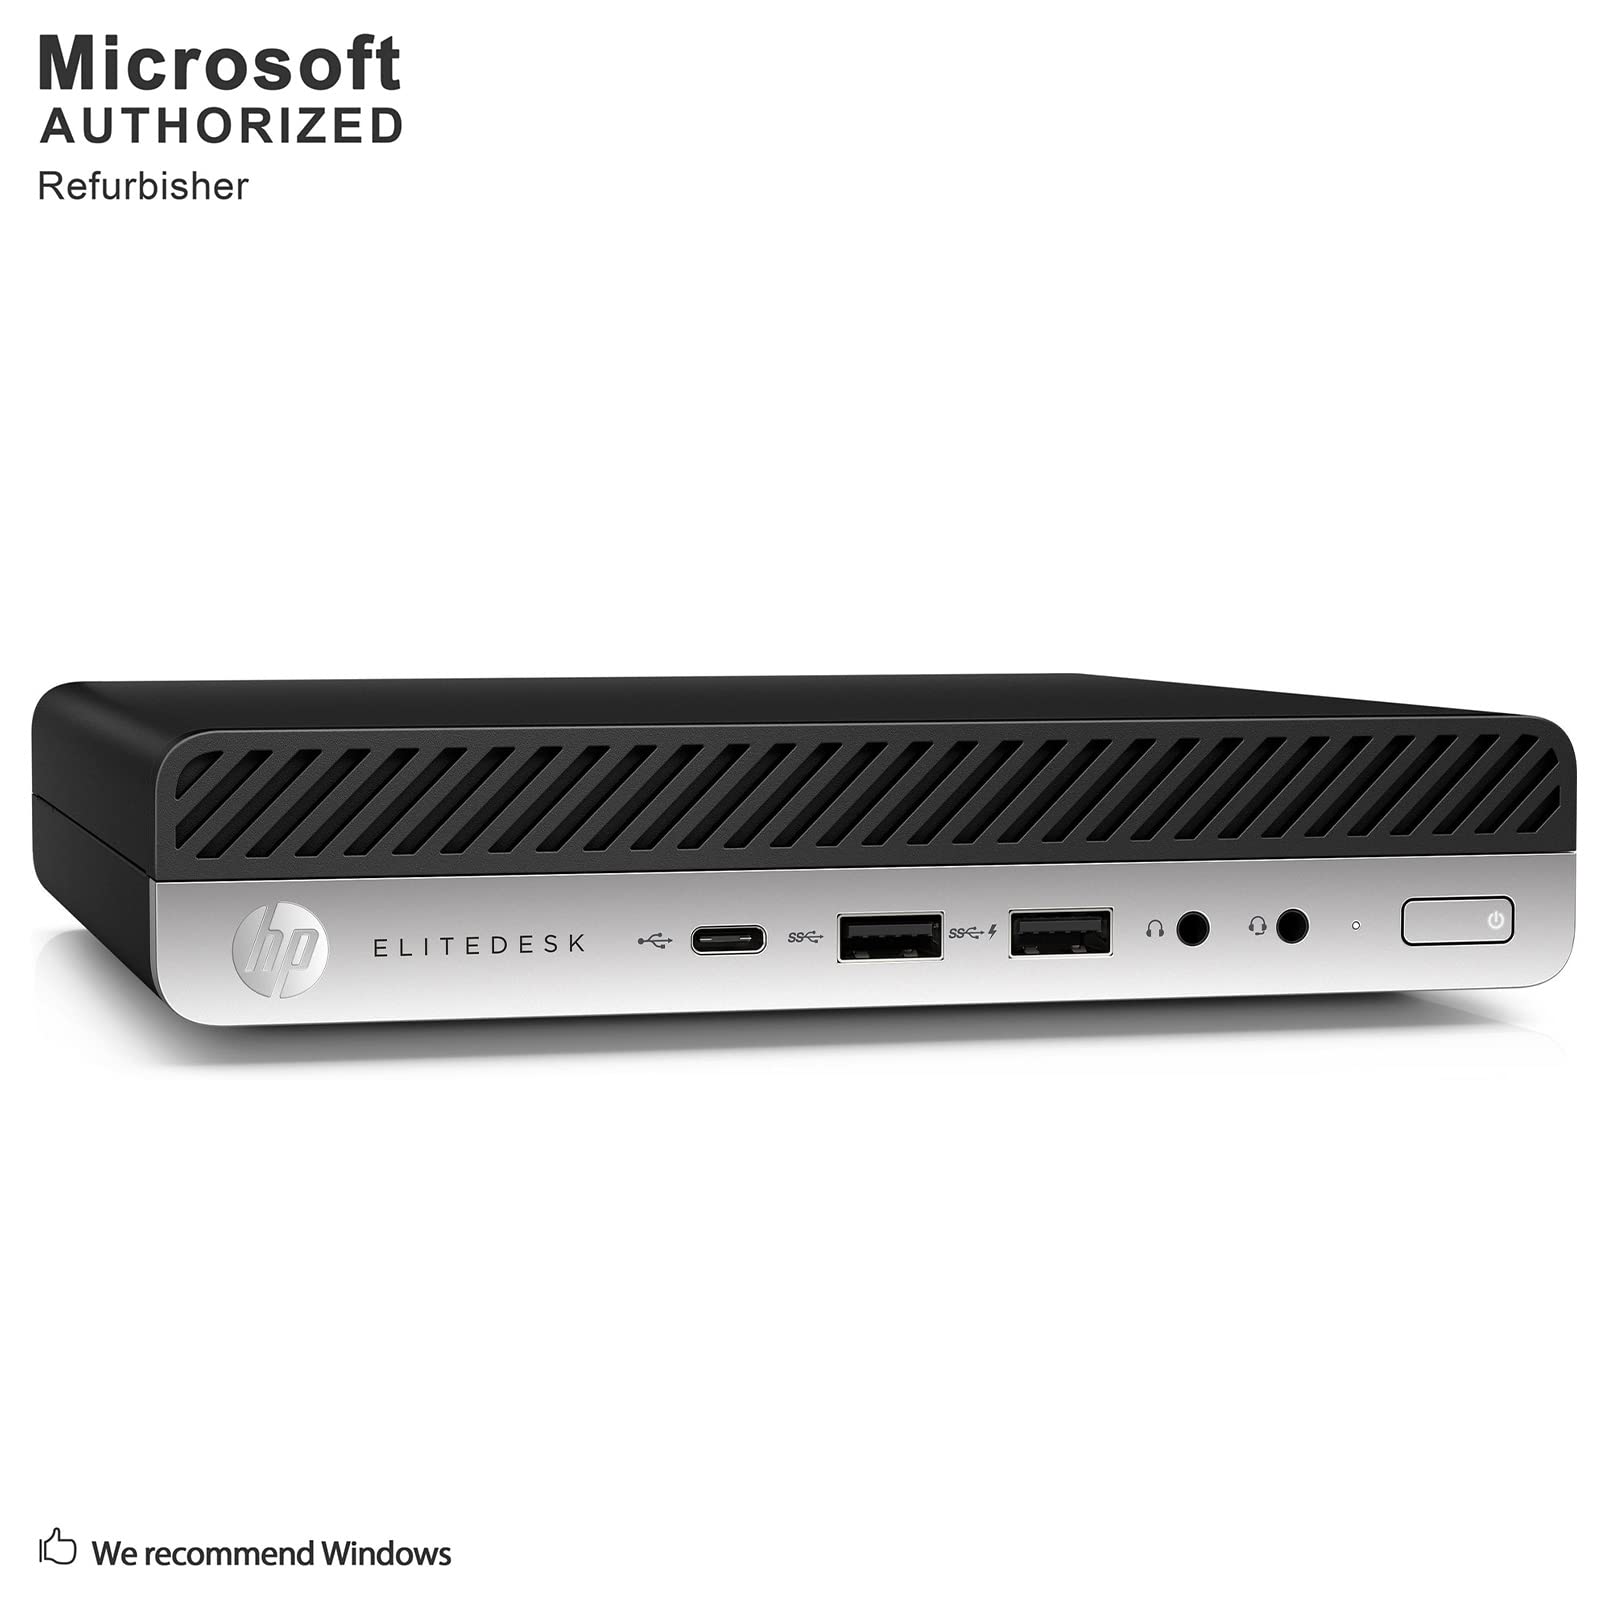 HP EliteDesk 800 G3 Desktop Mini Business PC Windows 10 Computer (Intel Core i5-6500T up to 3.1GHz, 8GB DDR4 RAM, 256GB SSD, WiFi, Bluetooth, USB Type-C 3.1, 2 x DisplayPort, Win 10 Pro) (Renewed)